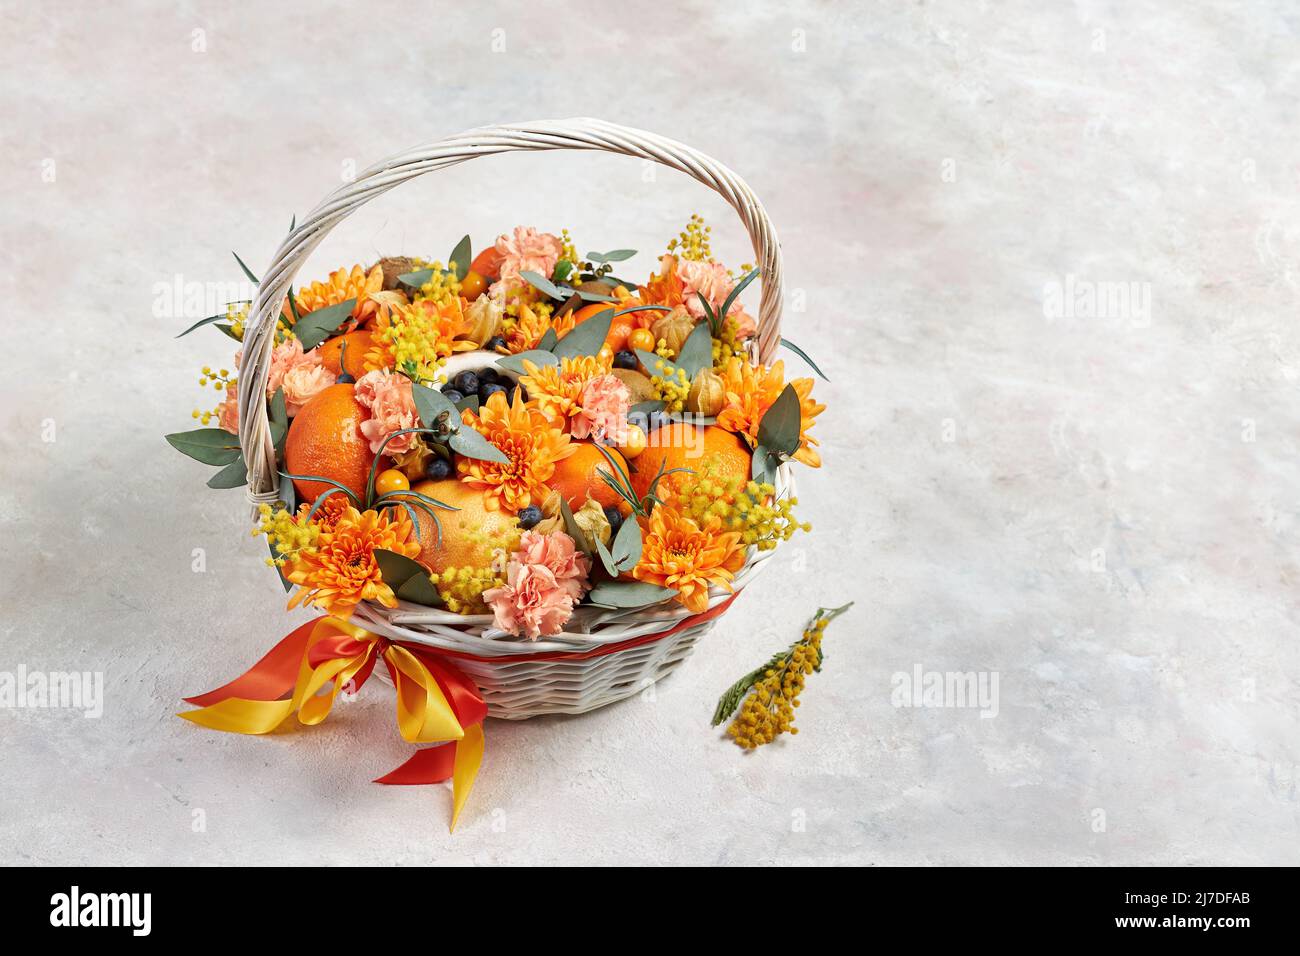 Cesta con frutas de color naranja y flores de color naranja sobre fondo gris Foto de stock